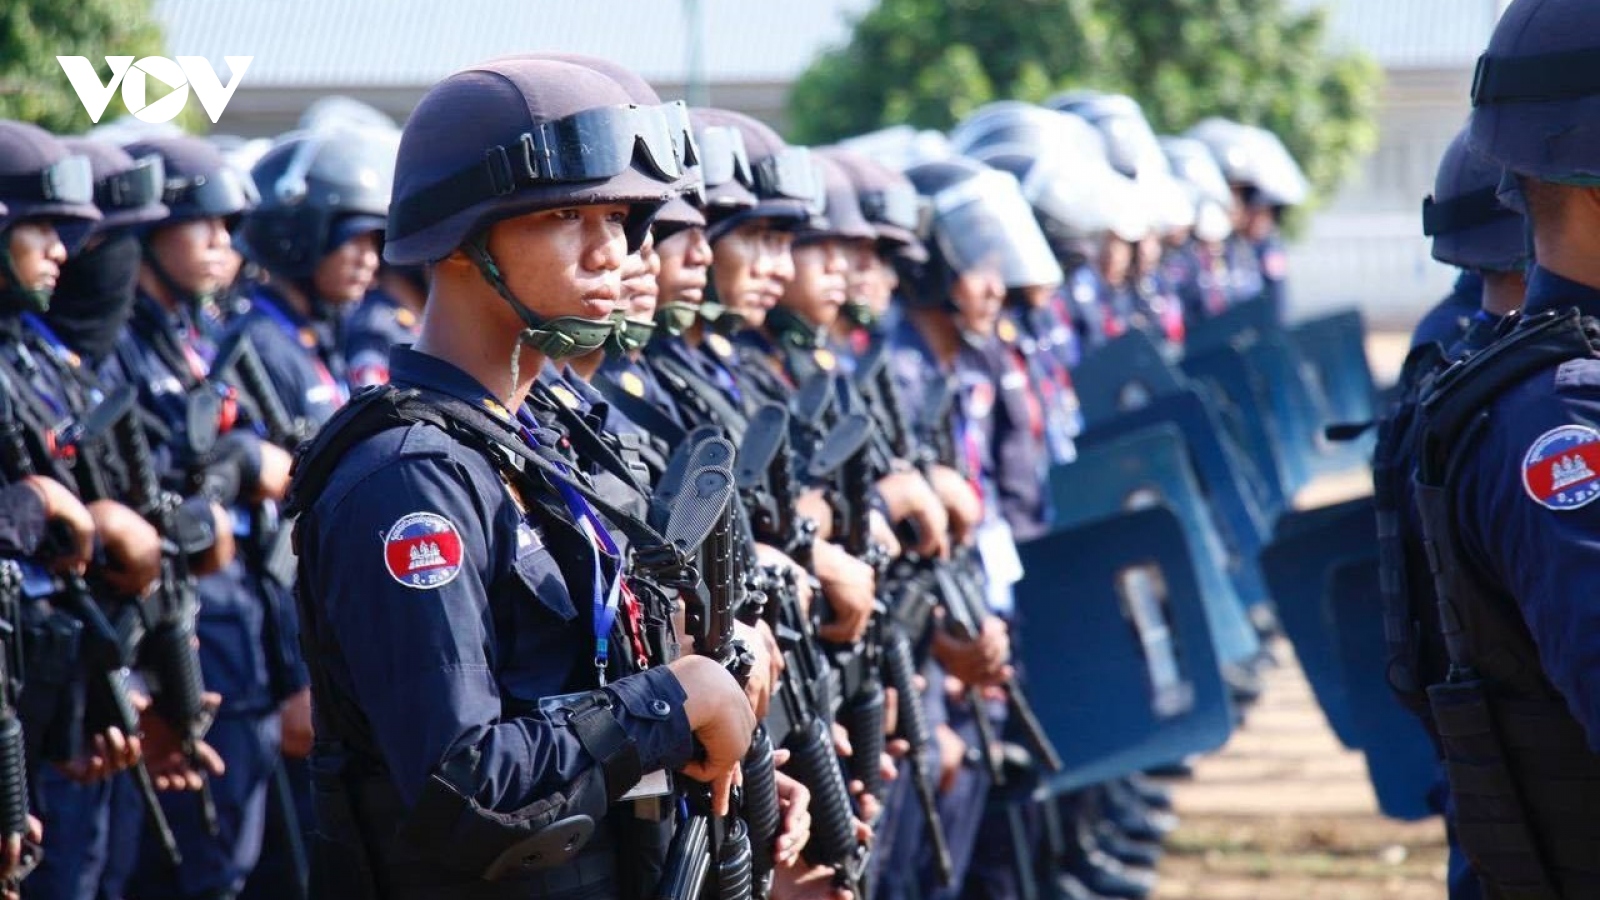 Campuchia kiểm soát chặt lao động nước ngoài để chặn buôn người